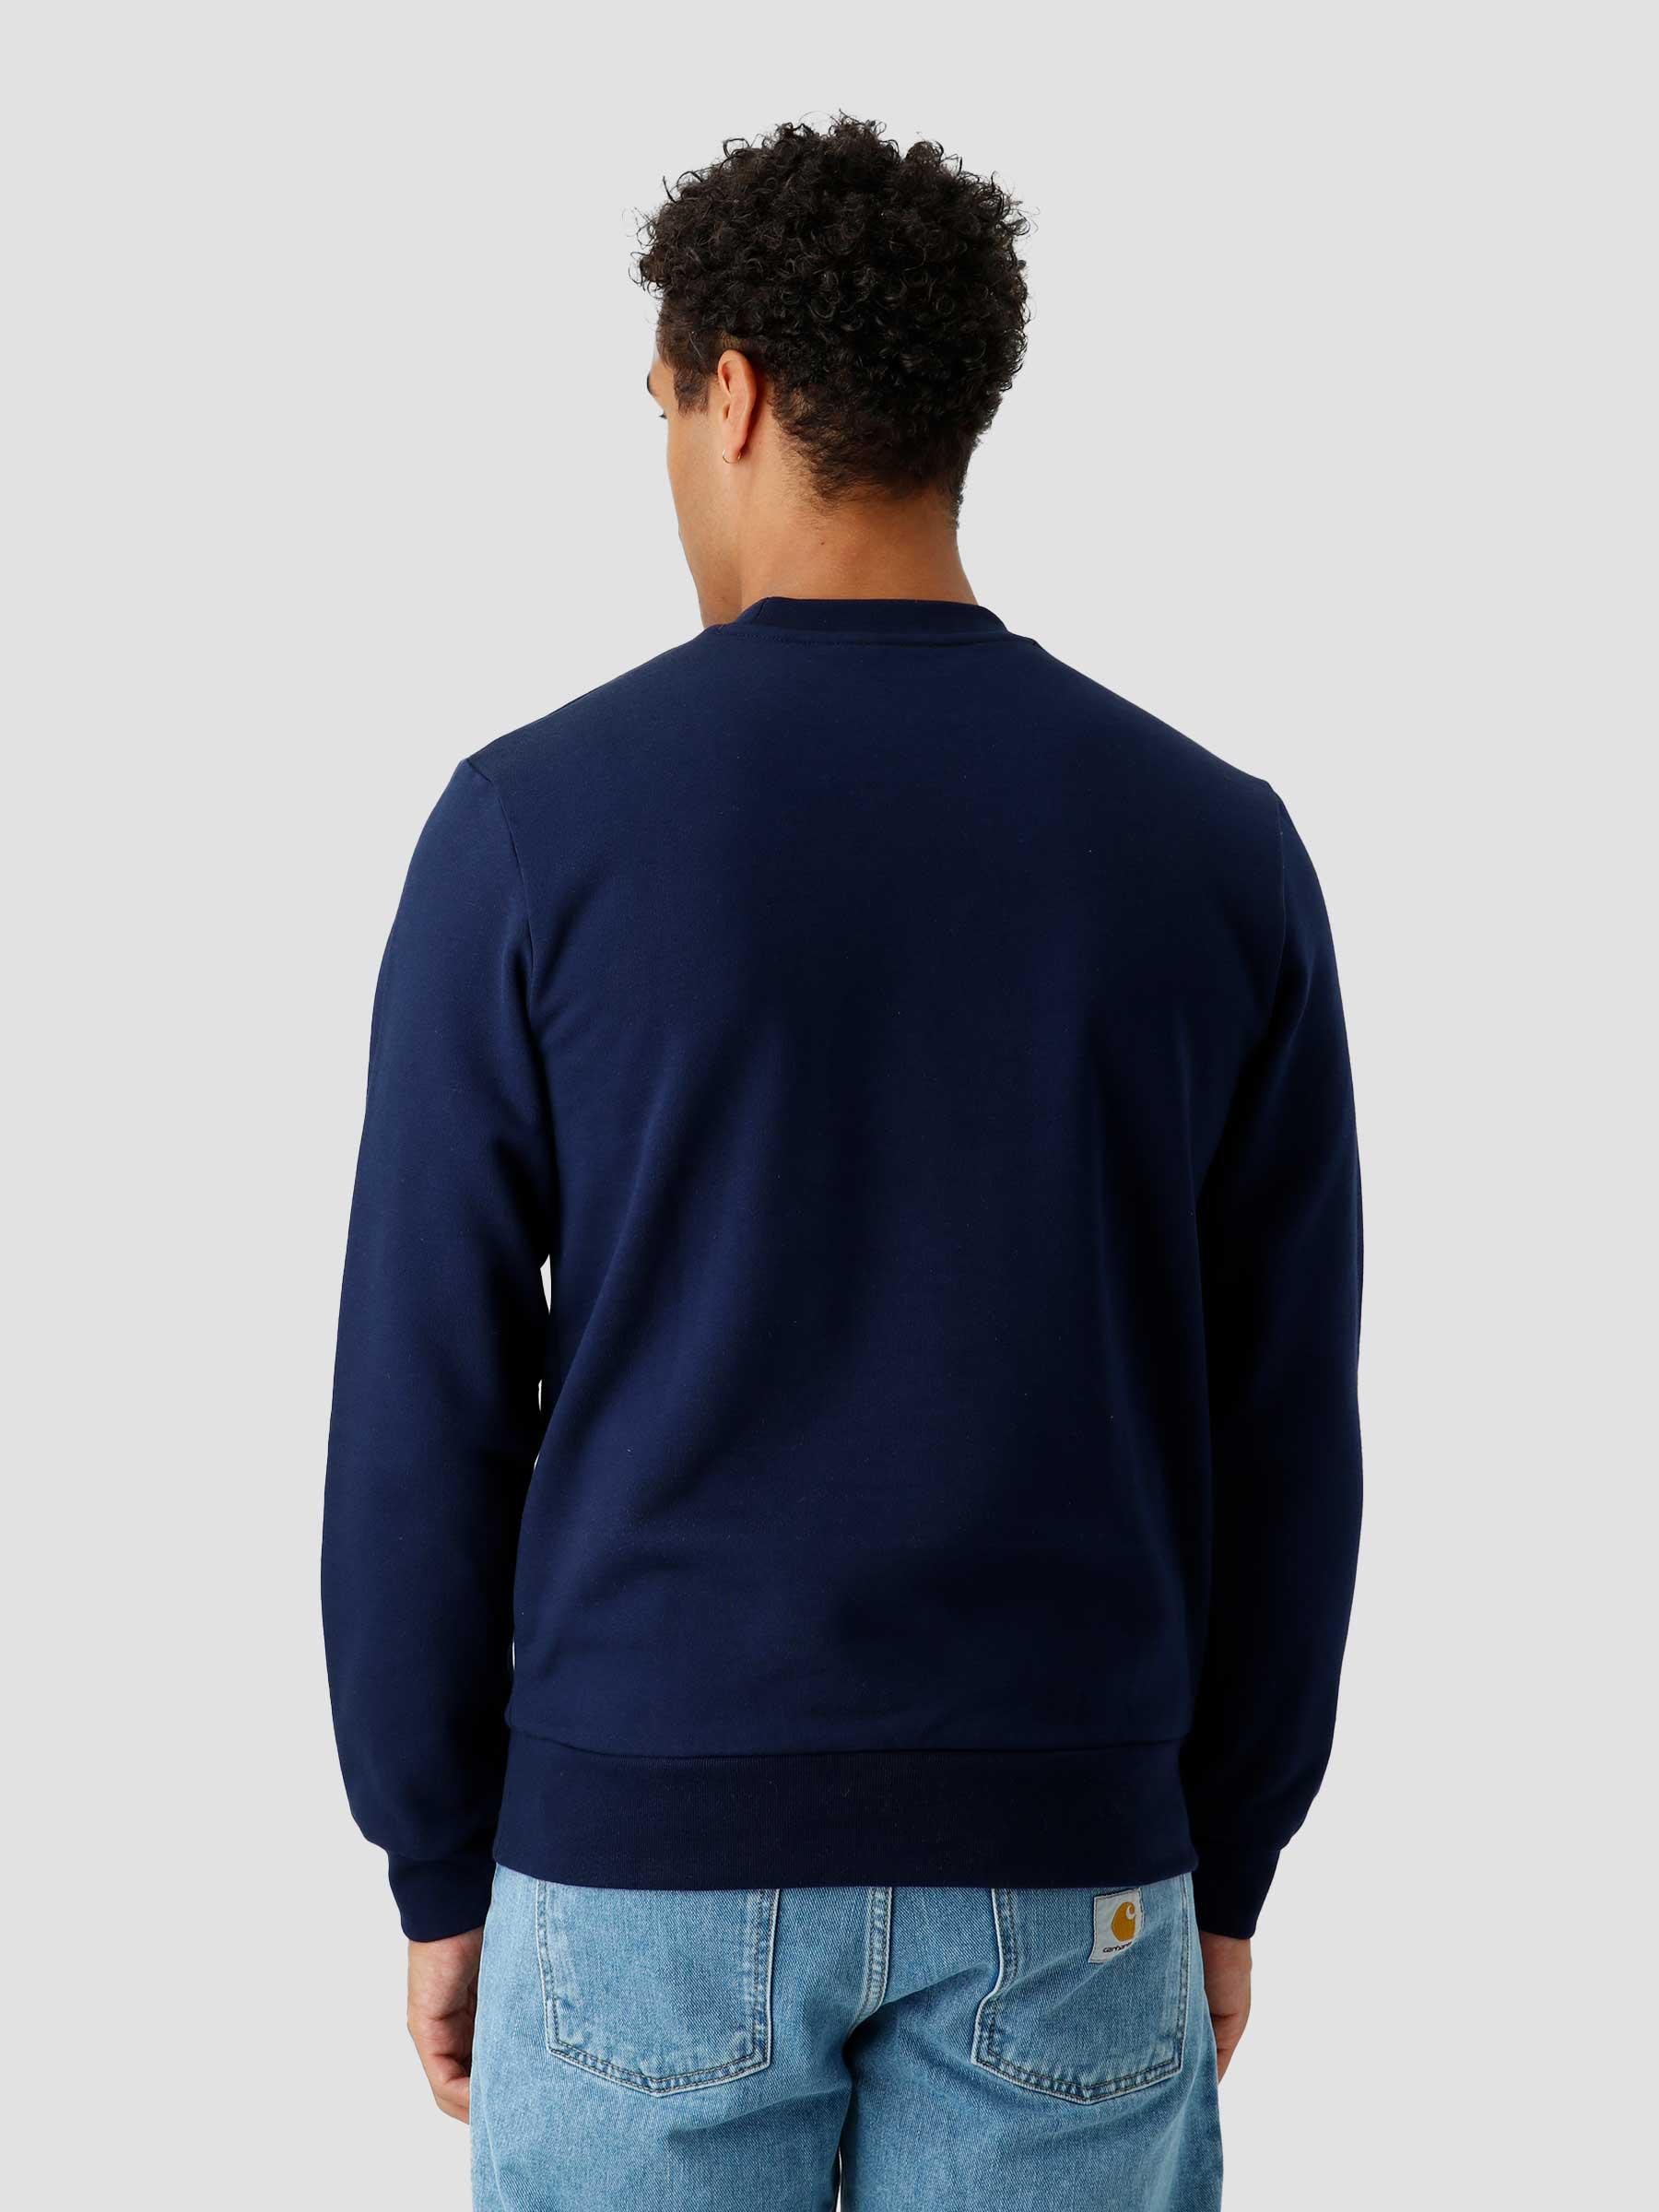 1Hs1 Men'S Sweatshirt 07 Navy Blue SH9608-23